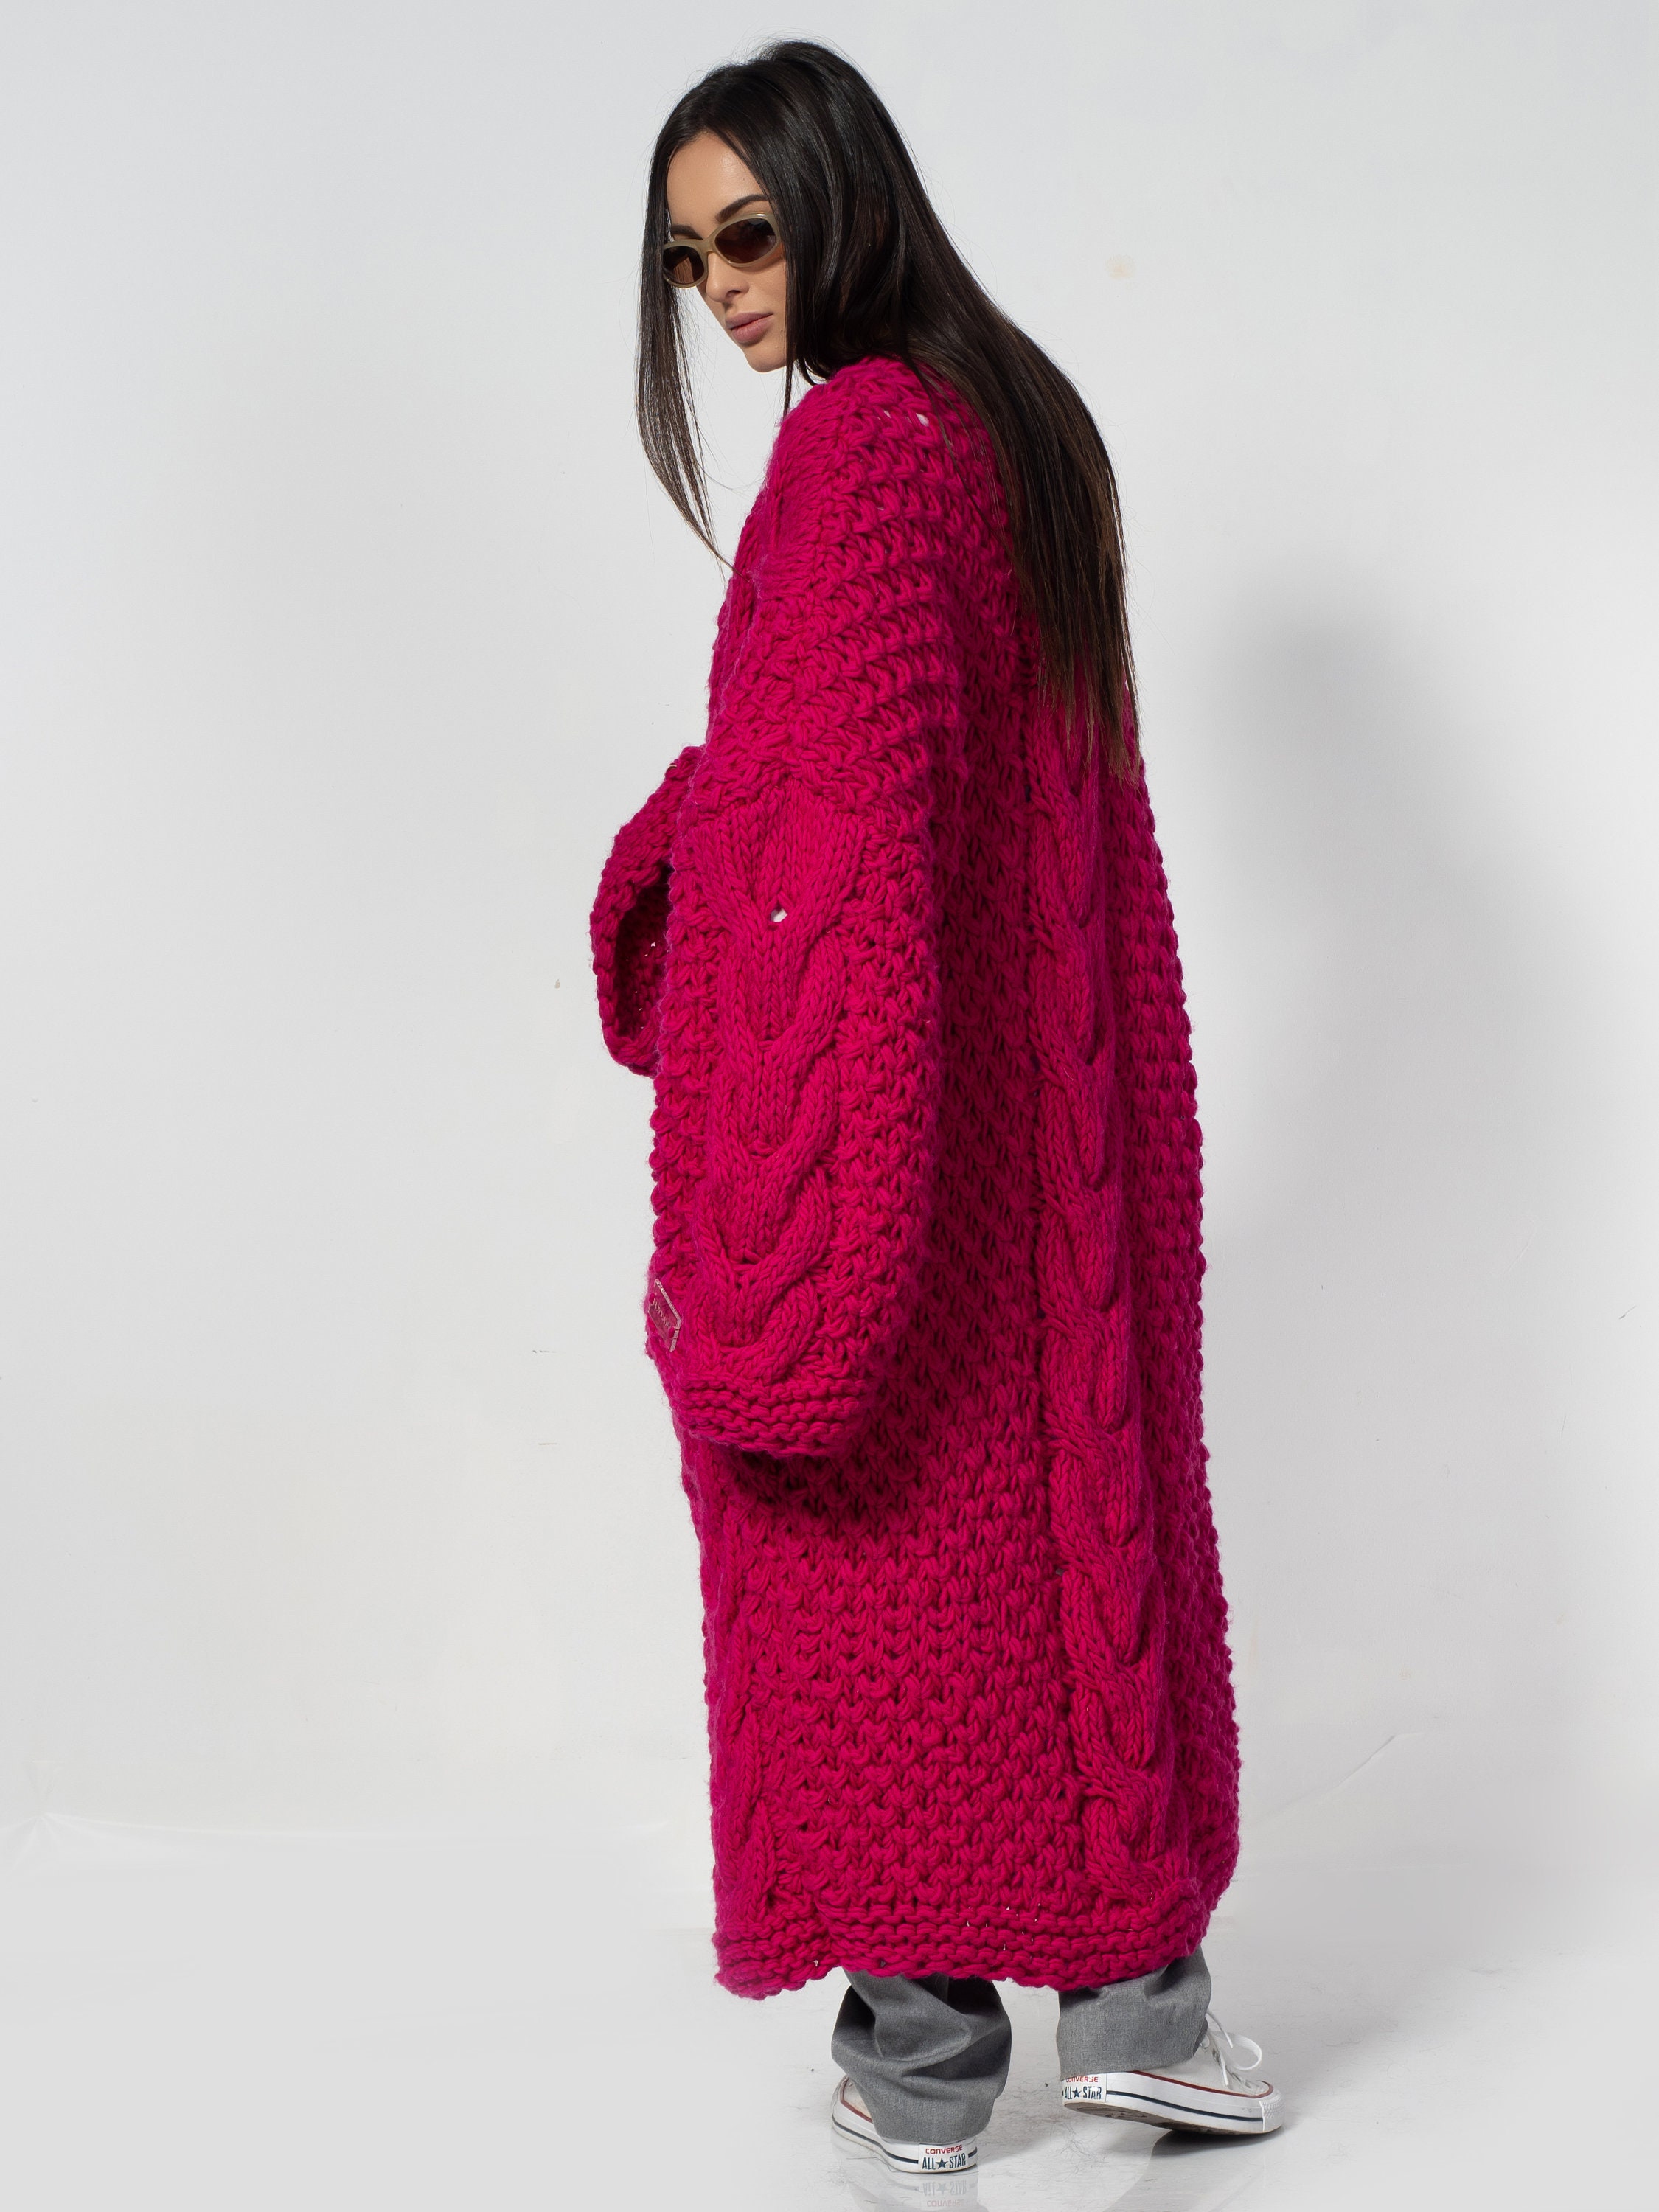 Pink Cardigan Sweater Wool Women Clothing Modern Elegant With - Etsy UK